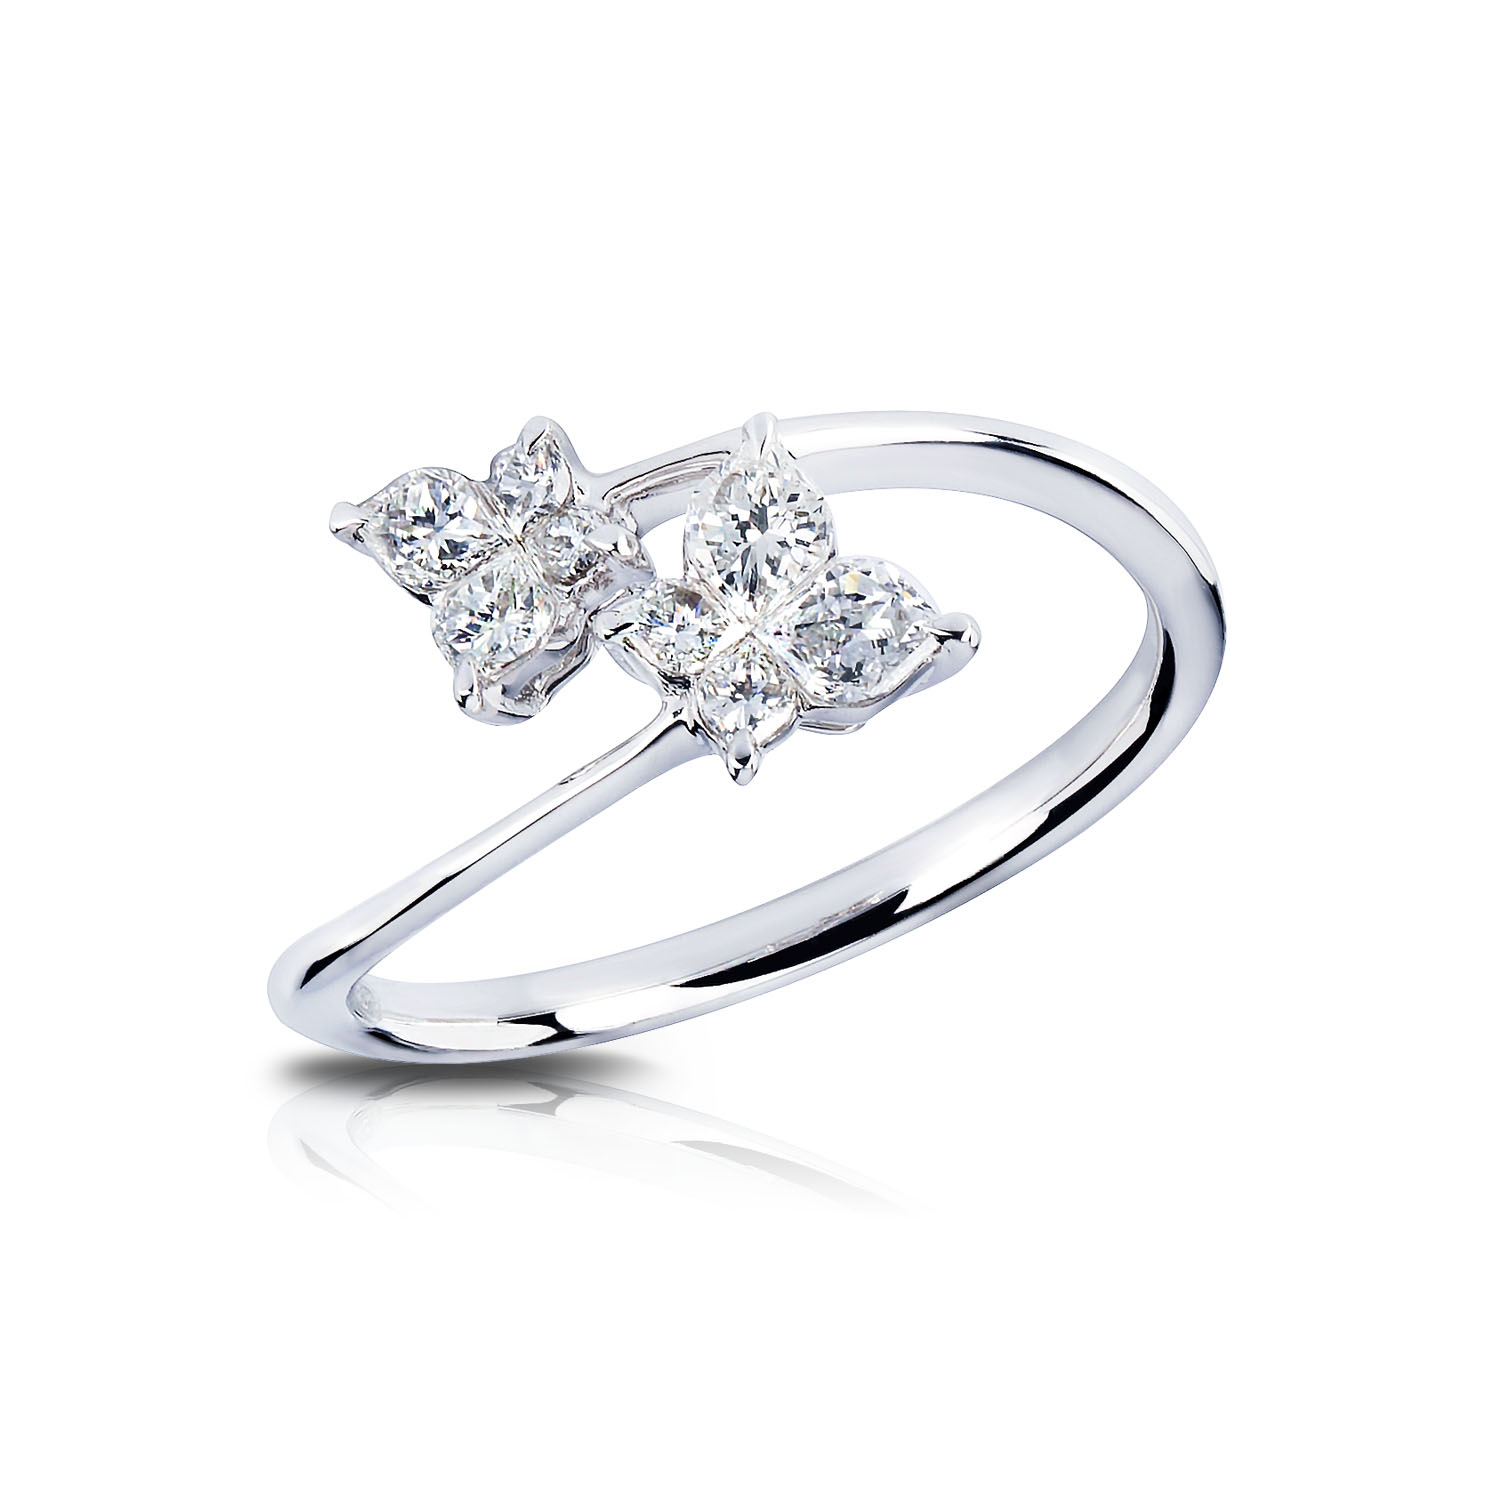 Calla Cut Diamond Ring Factory Sale | bellvalefarms.com